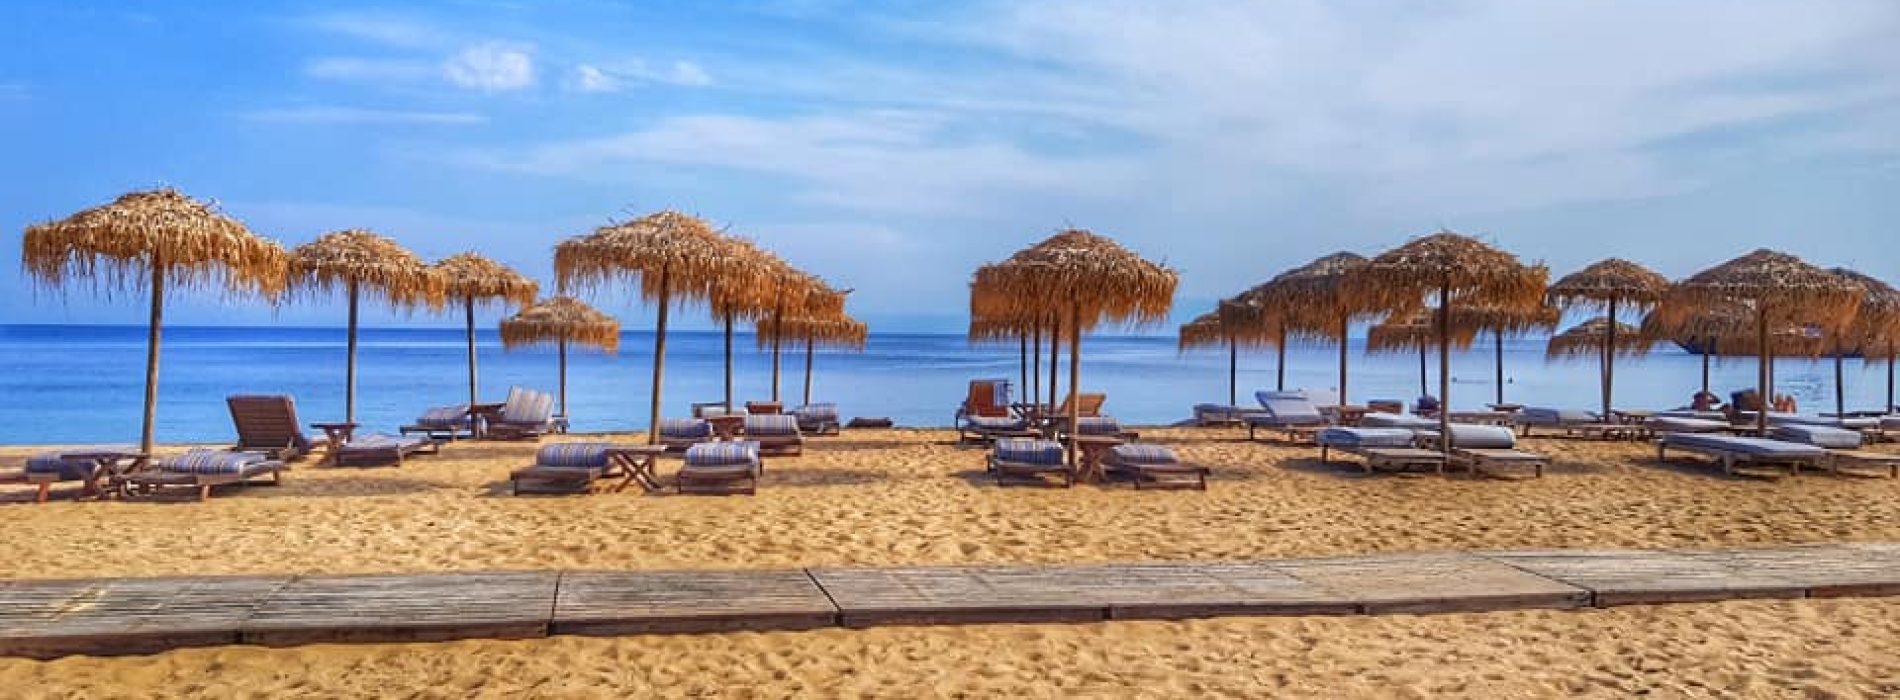 Insula Skiathos din Grecia, destinație sigură pentru vacanță